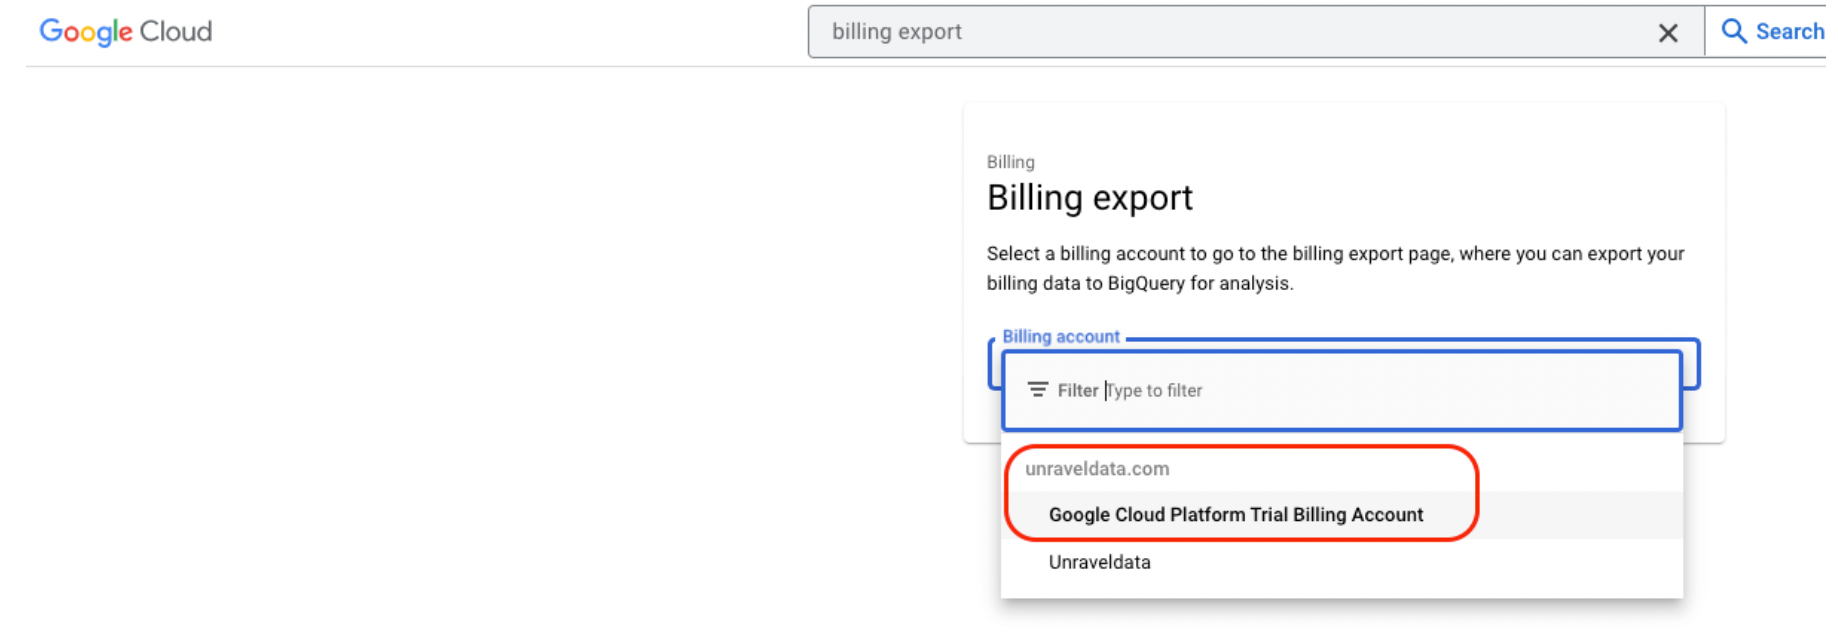 freemium-export-billing-search-billing1.png